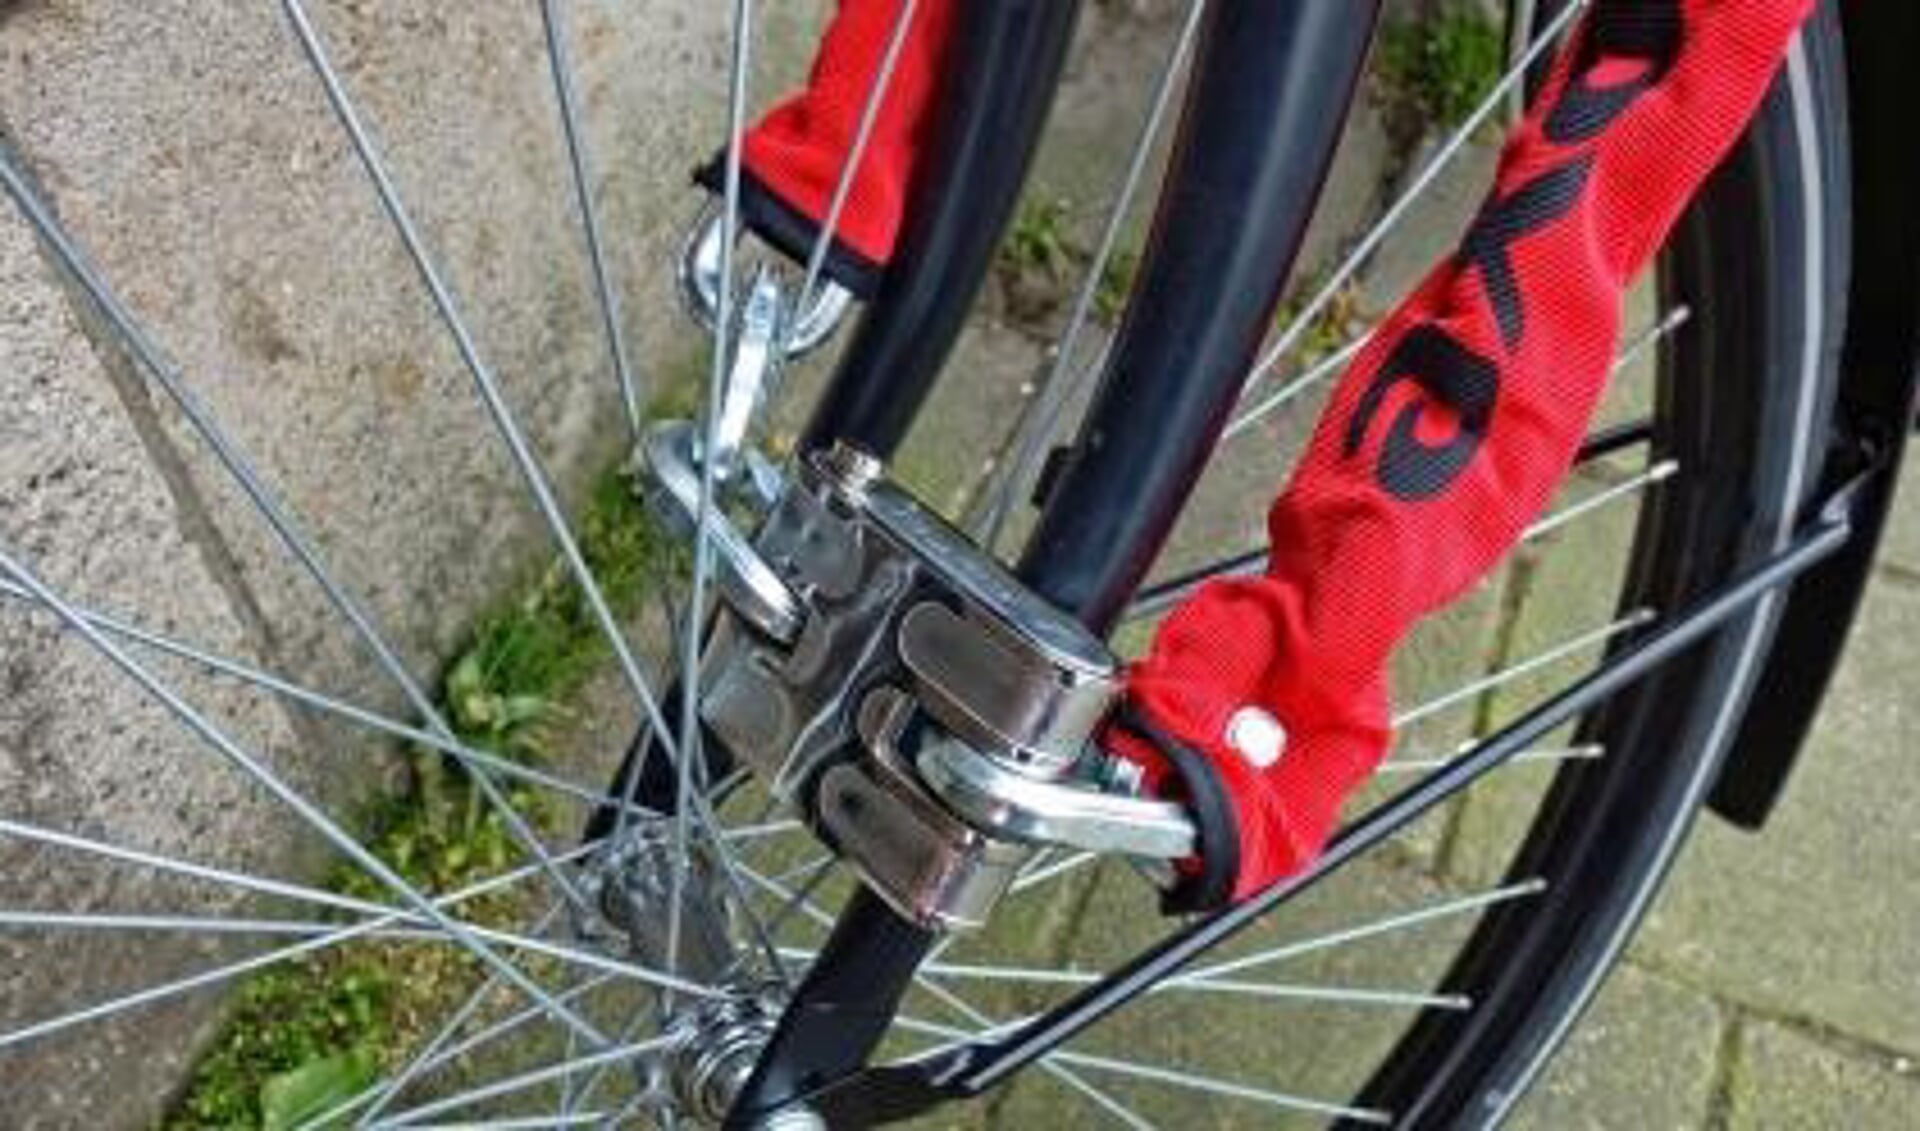 Versnellen onbekend klein Hoe zet je je fiets veilig op slot - Barneveldse Krant | Nieuws uit de  regio Barneveld